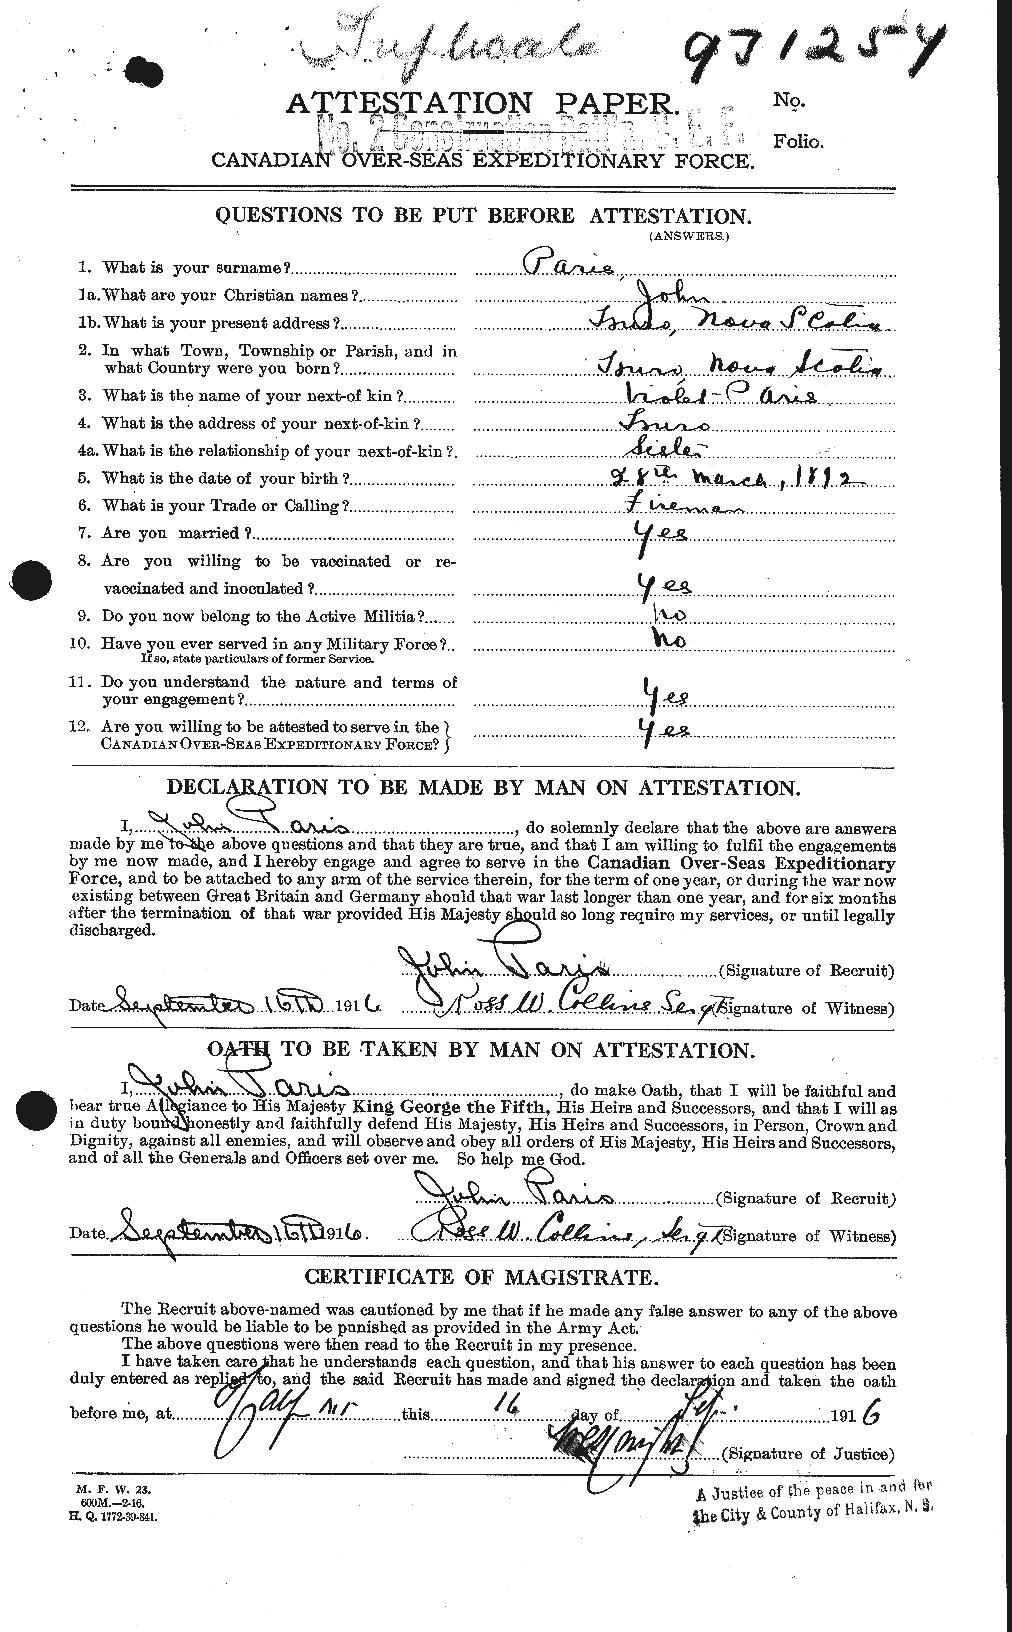 Dossiers du Personnel de la Première Guerre mondiale - CEC 564601a